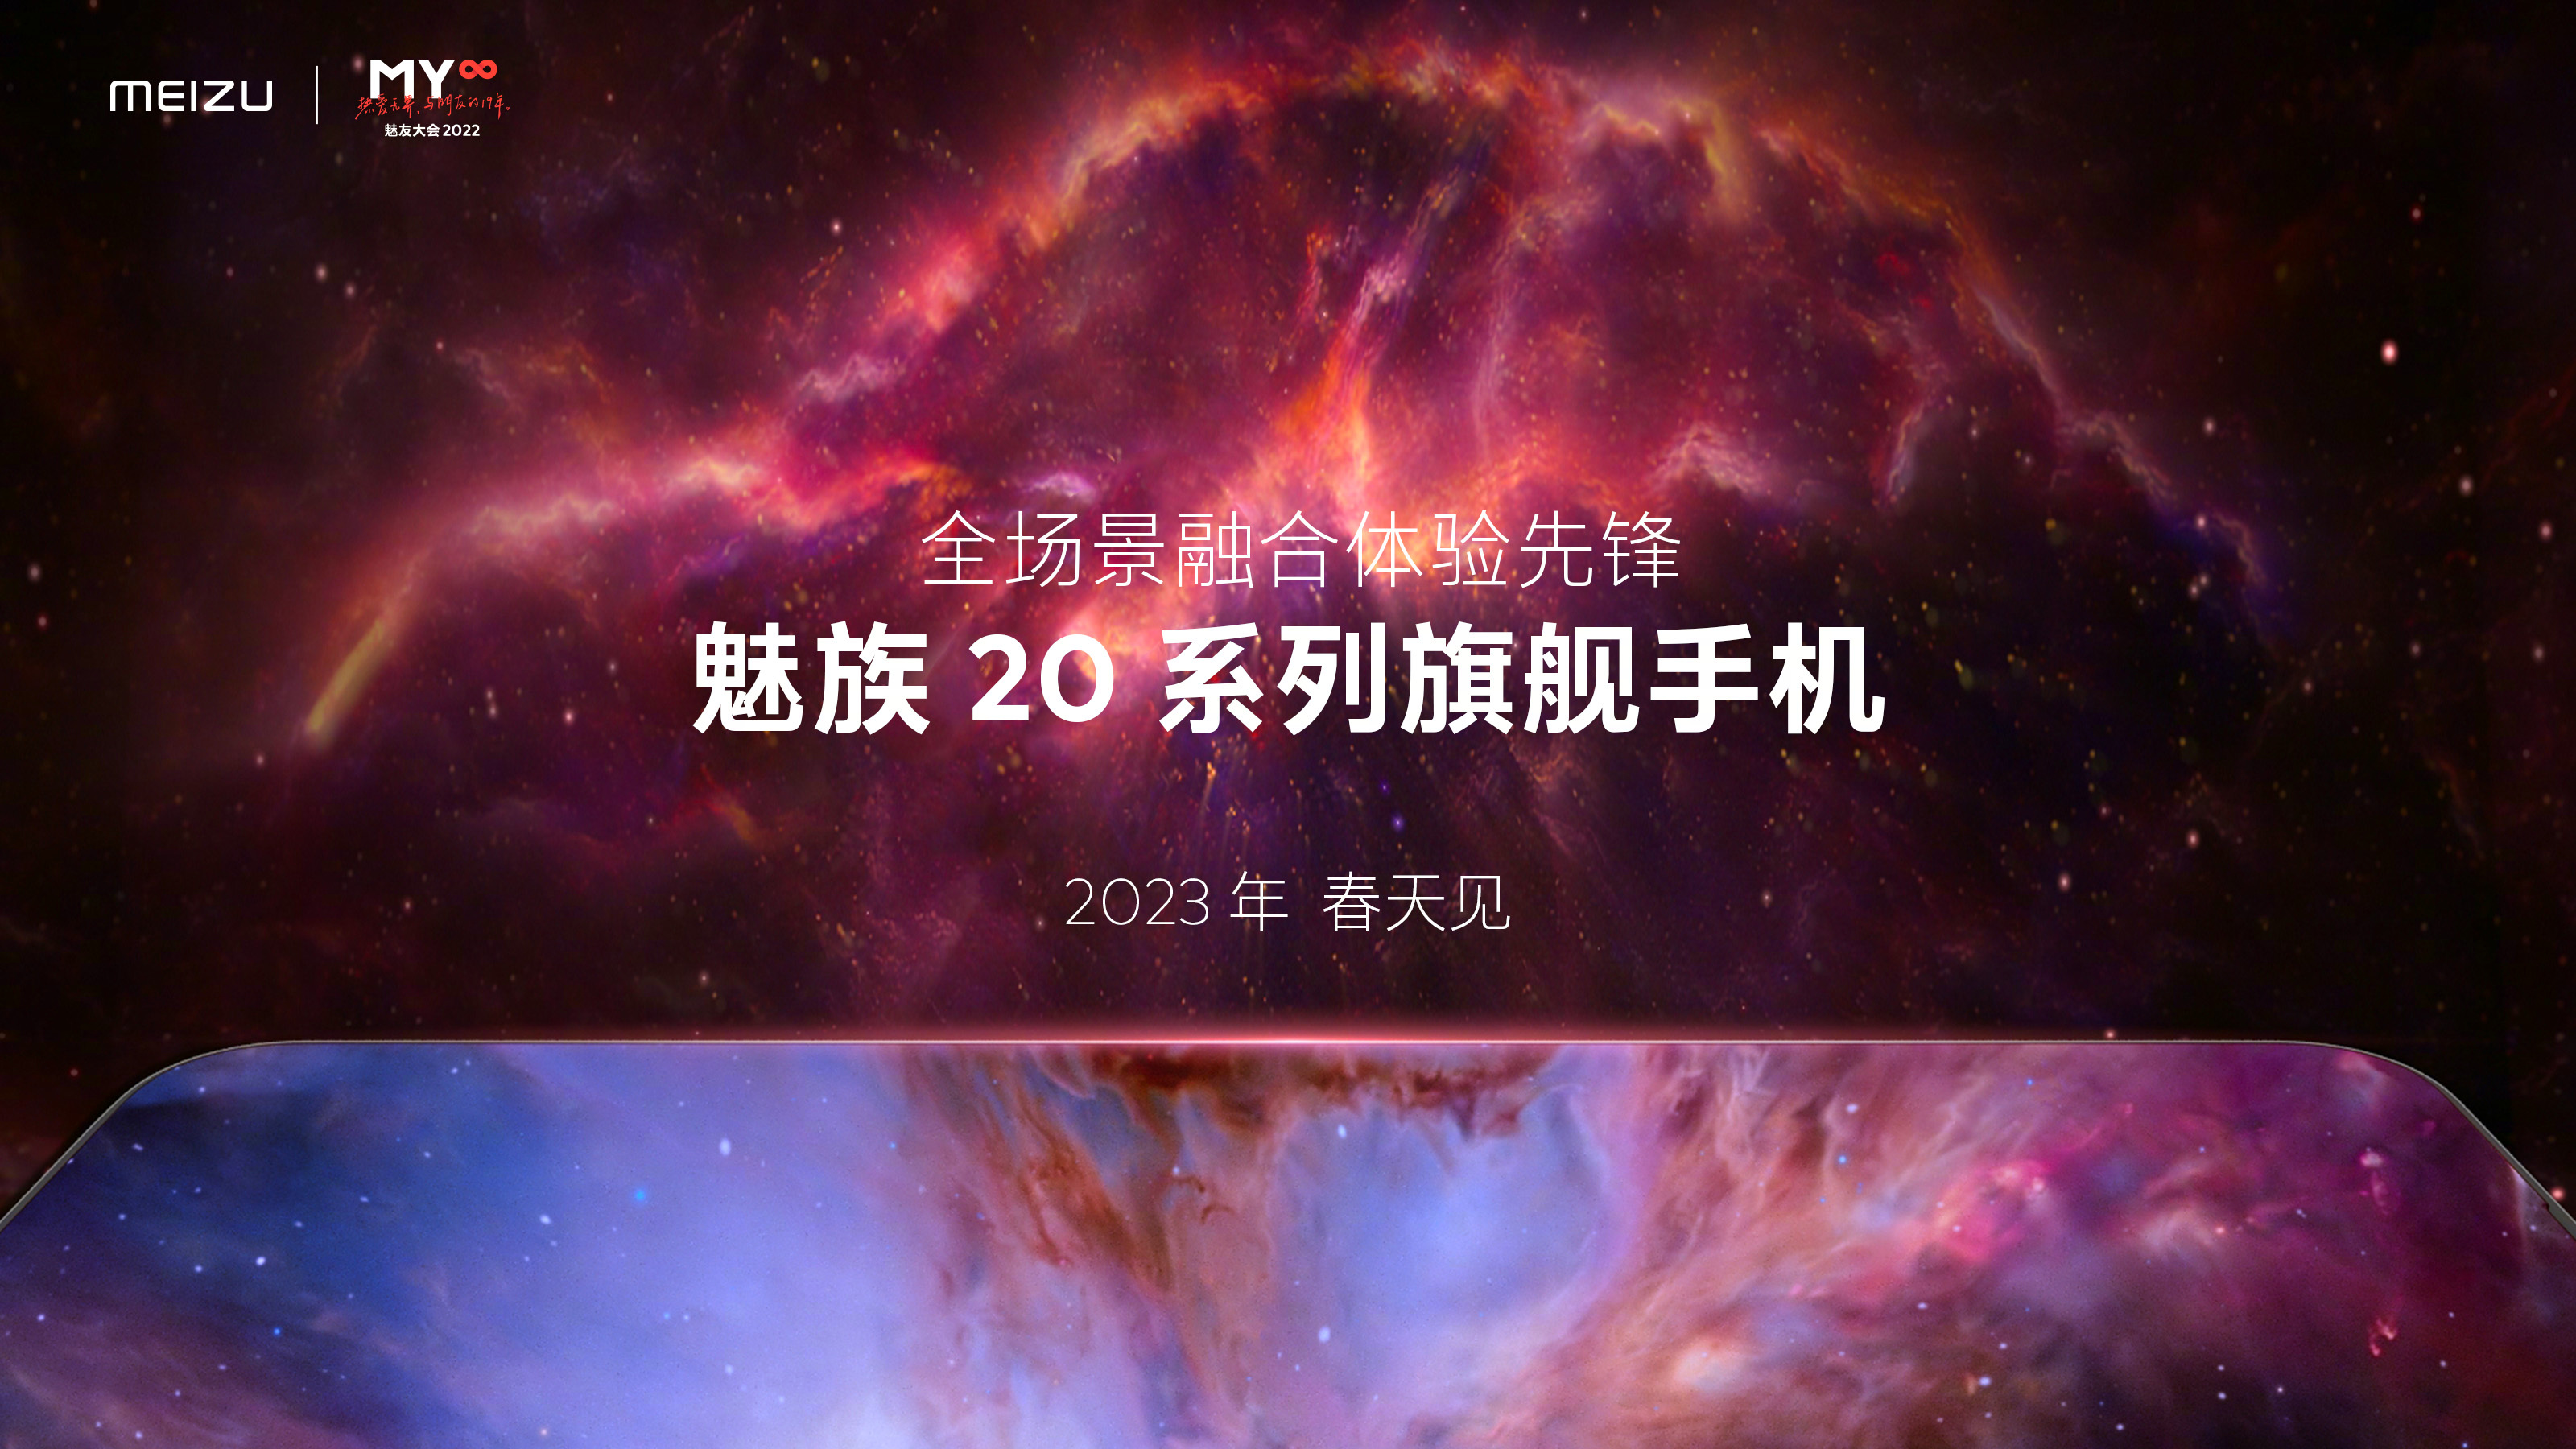 Meizu 20: так називатиметься нова флагманська лінійка смартфонів компанії Meizu